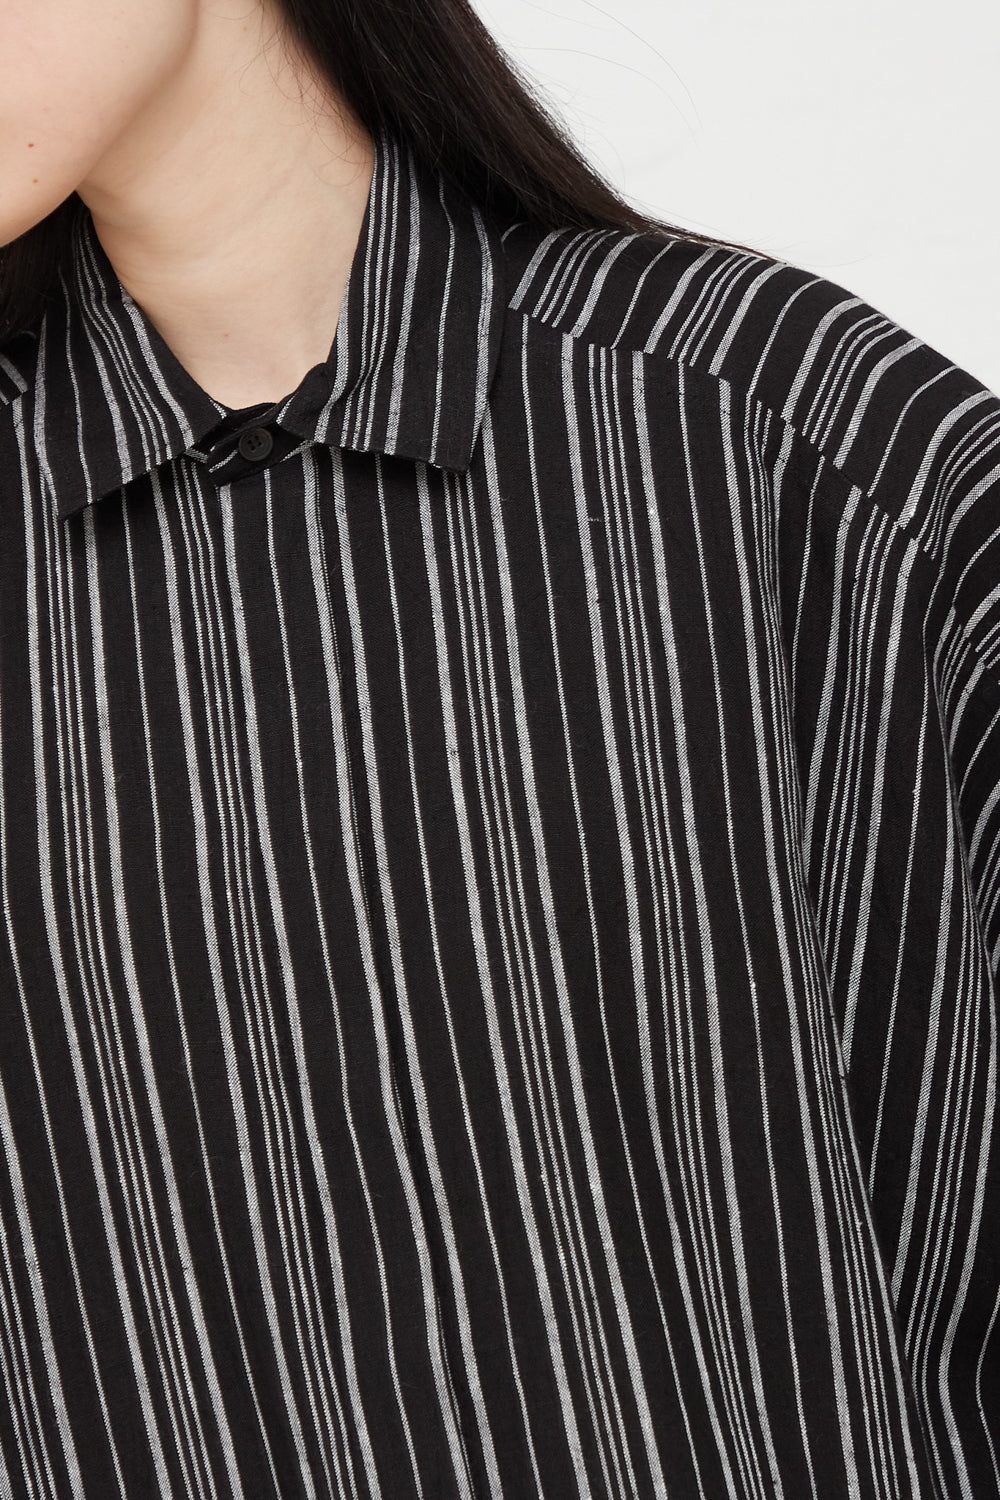 Jan-Jan Van Essche - Linen Batist Shirt in Contrast Stripe | Oroboro Store  | New York, NY